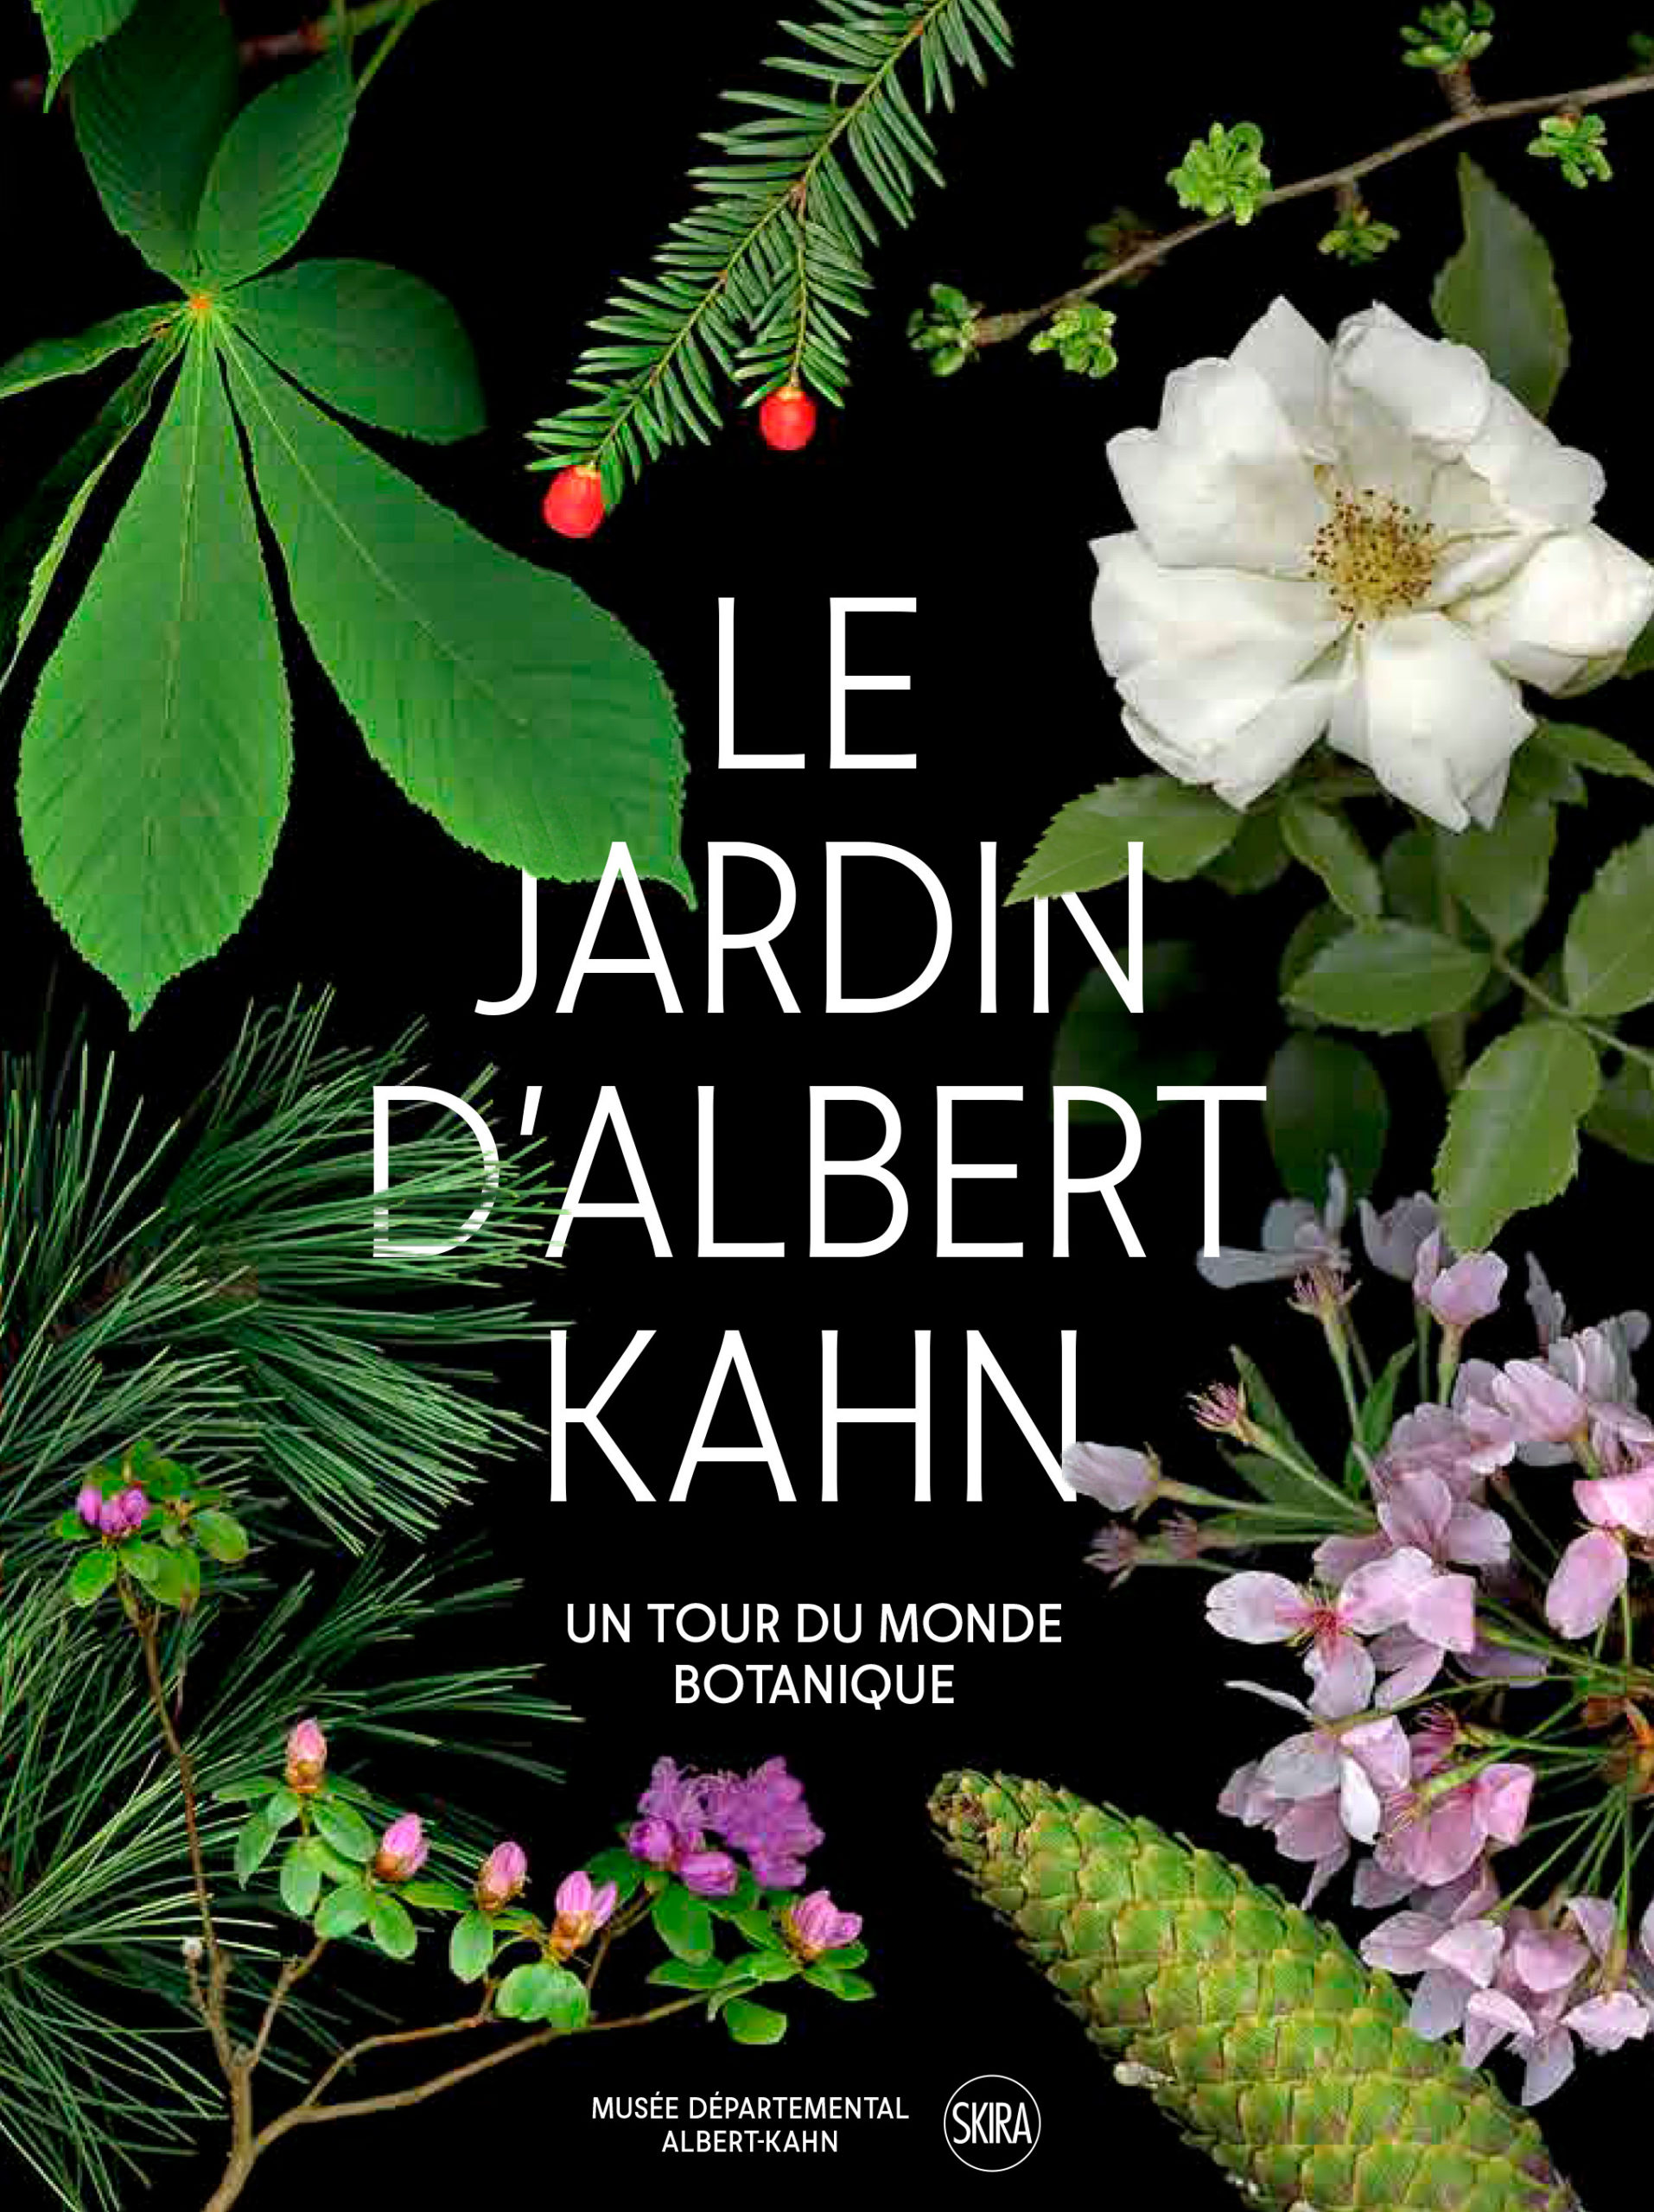 Le jardin d’Albert Kahn, un tour du monde botanique à découvrir absolument !